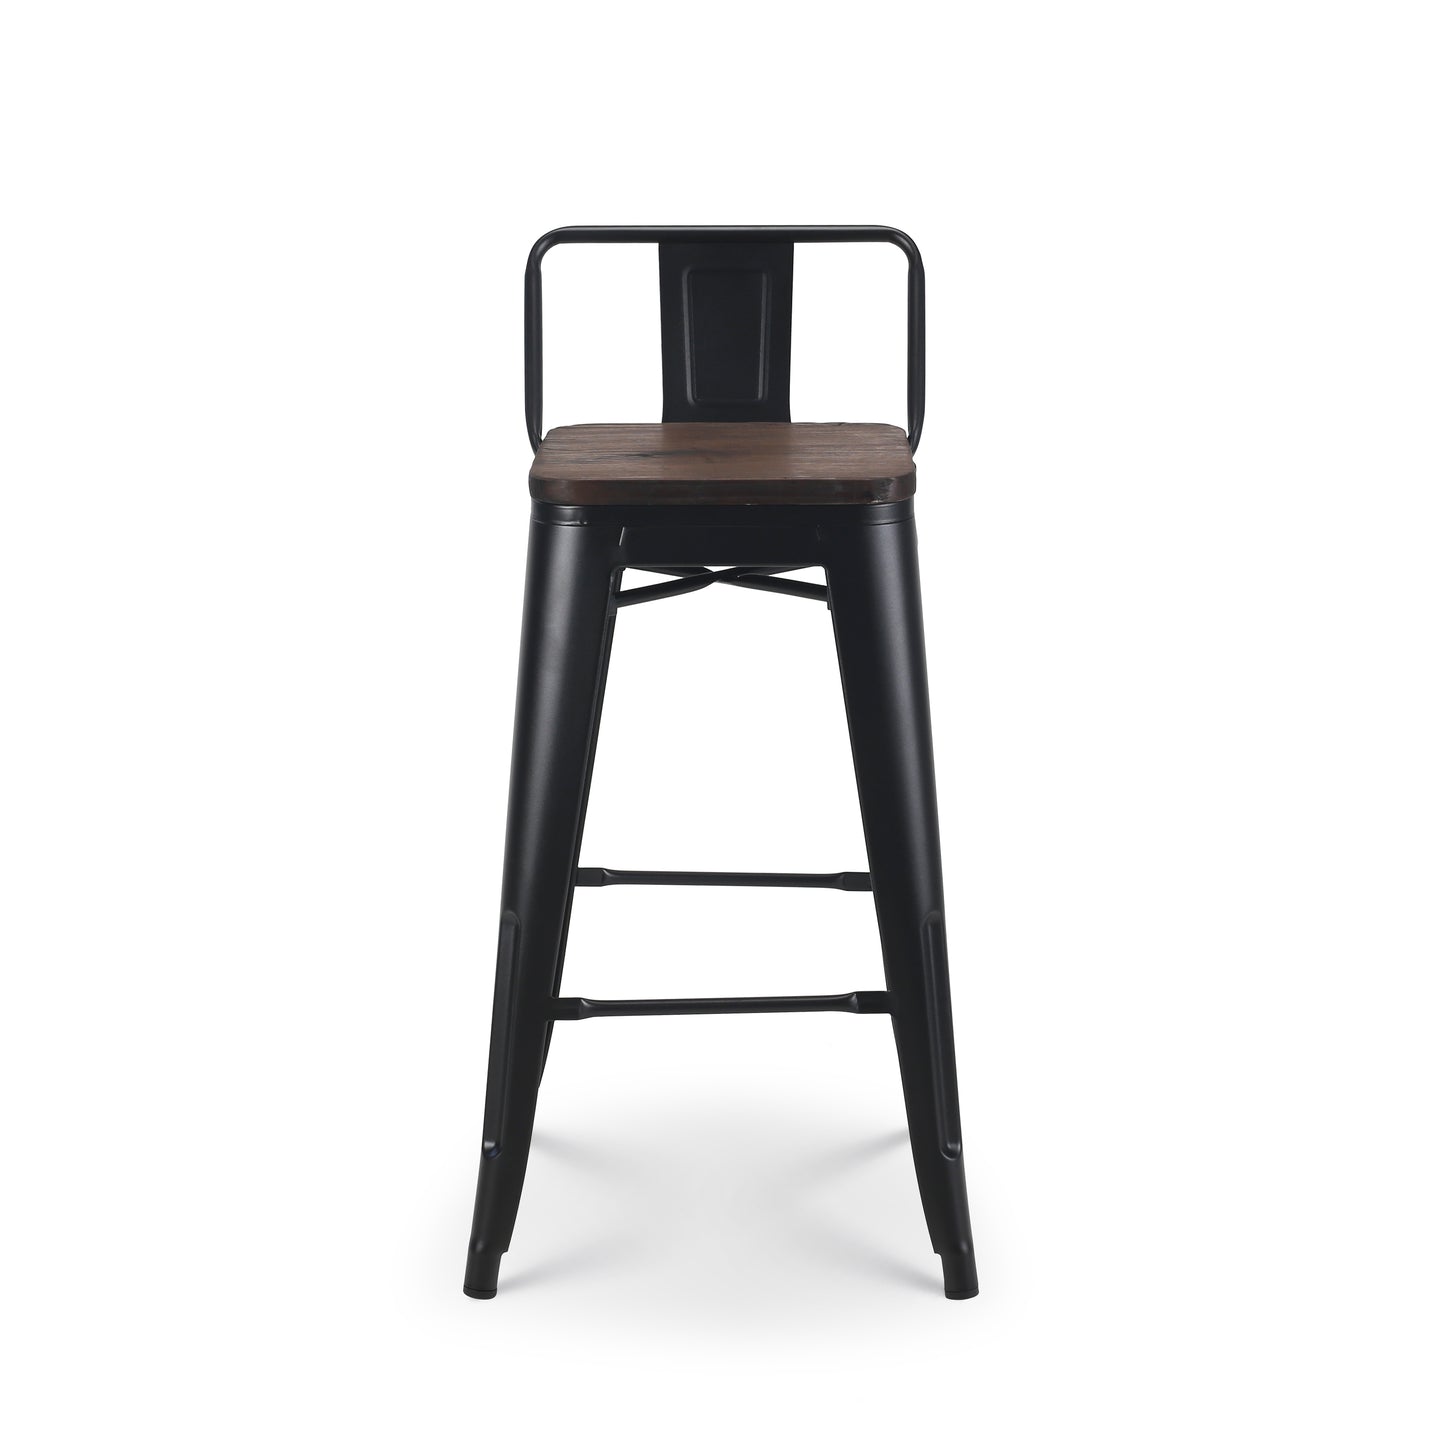 Tabouret de bar en métal noir mat style industriel avec dossier et assise en bois foncé - Hauteur 66cm